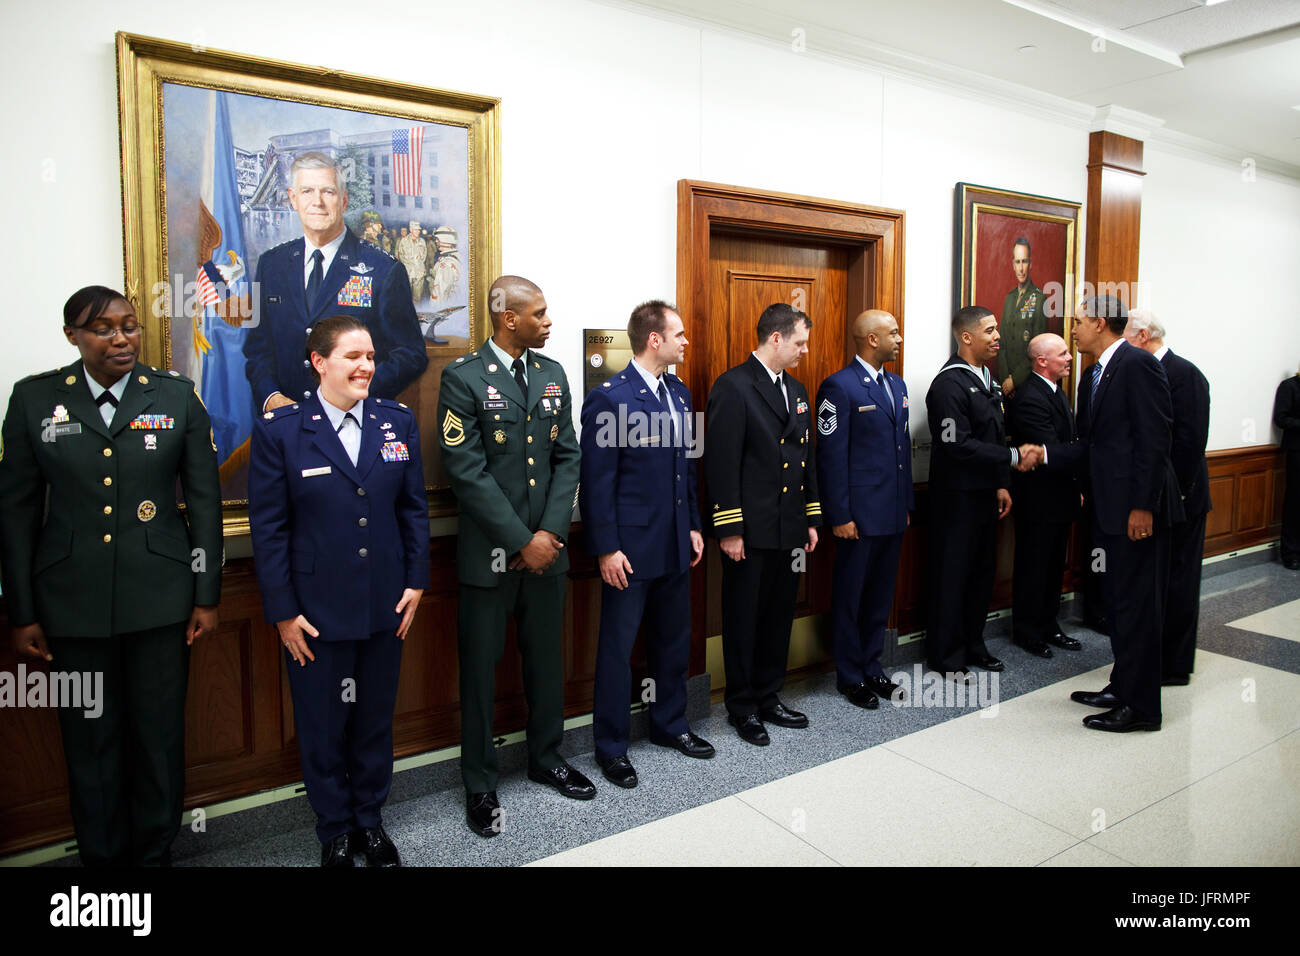 Le président Barack Obama et le vice-président Joe Biden salue le personnel militaire au cours d'une visite au Pentagone à Arlington, en Virginie. 1/28/09. Photo Officiel de la Maison Blanche par Pete Souza Banque D'Images